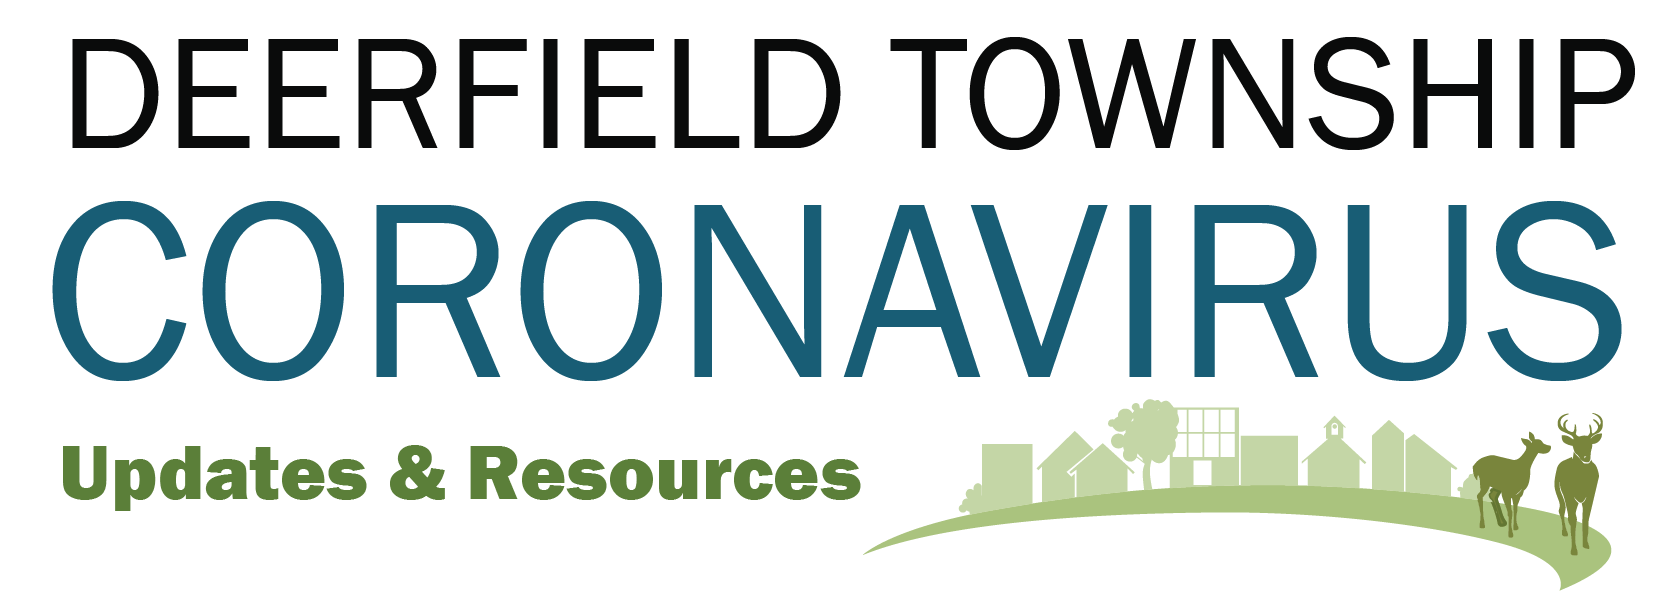 Deerfield Township Coronavirus Updates and Information